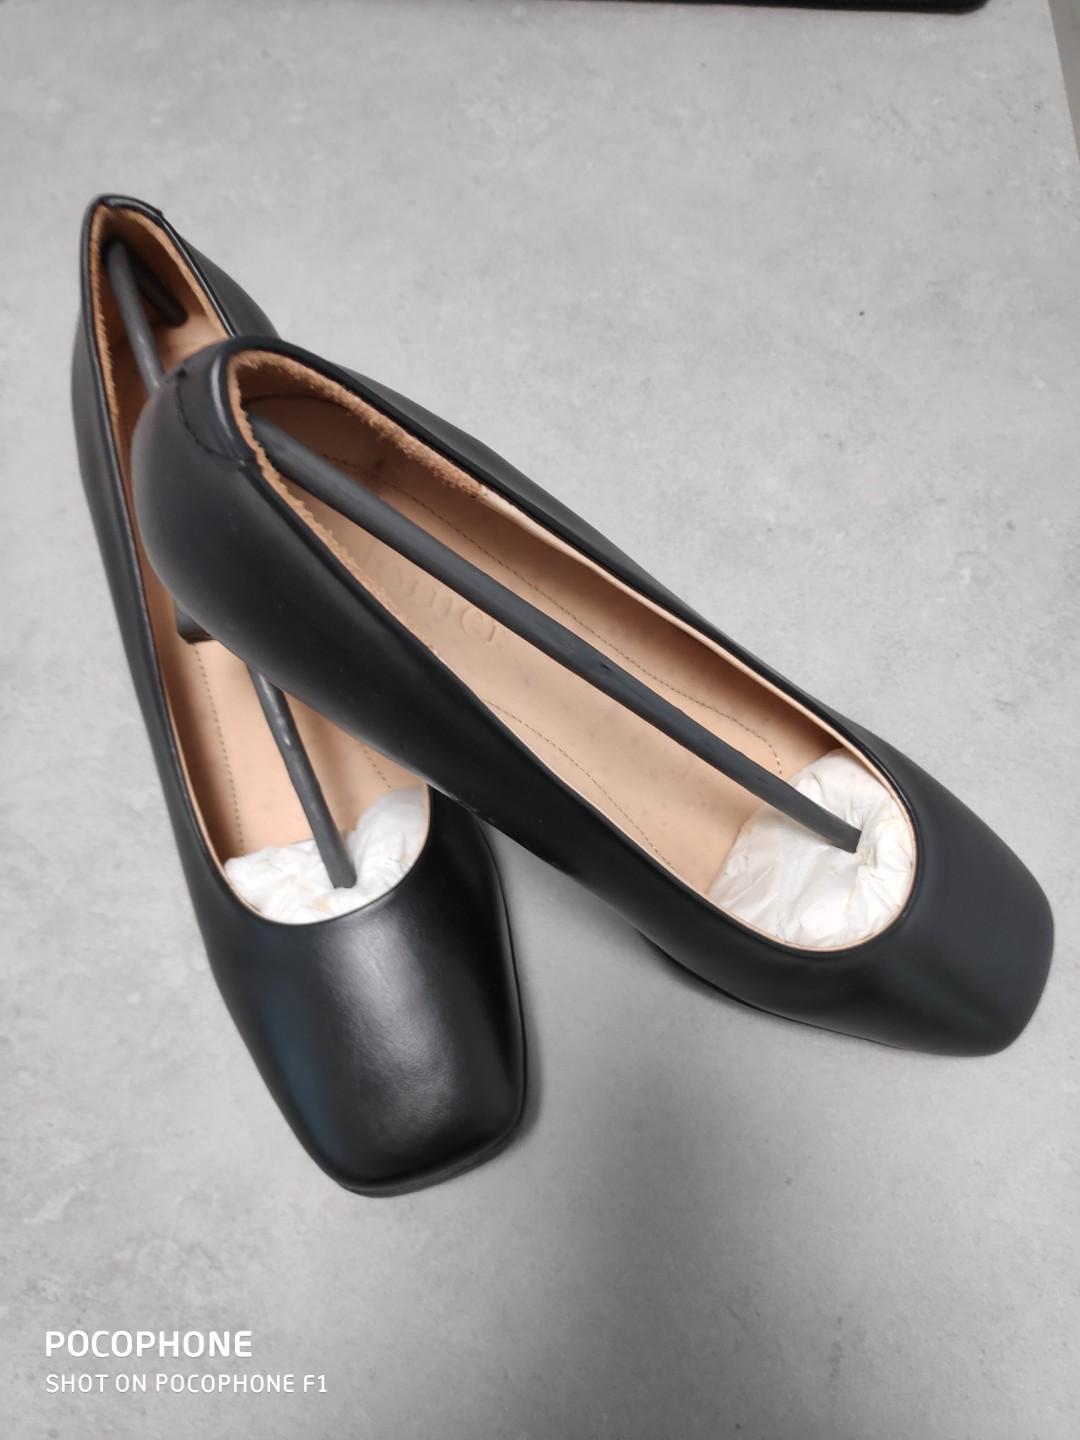 plain black leather court shoes